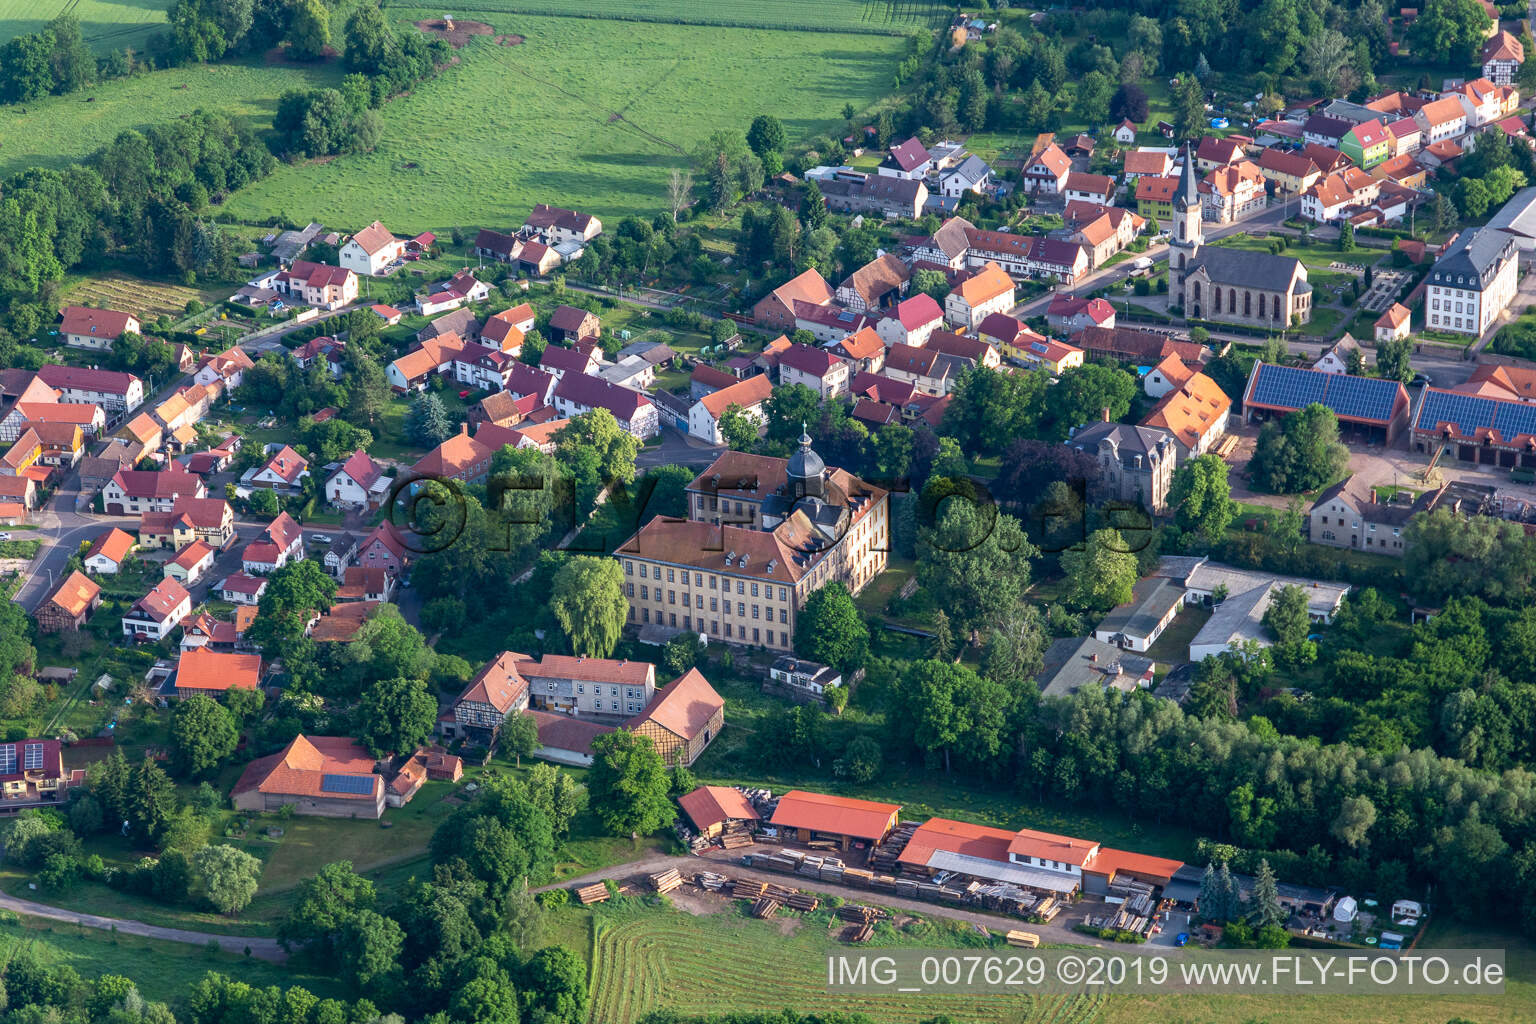 Luftbild von Ortsansicht am Rande von landwirtschaftlichen Feldern und Nutzflächen in Friedrichswerth im Bundesland Thüringen, Deutschland